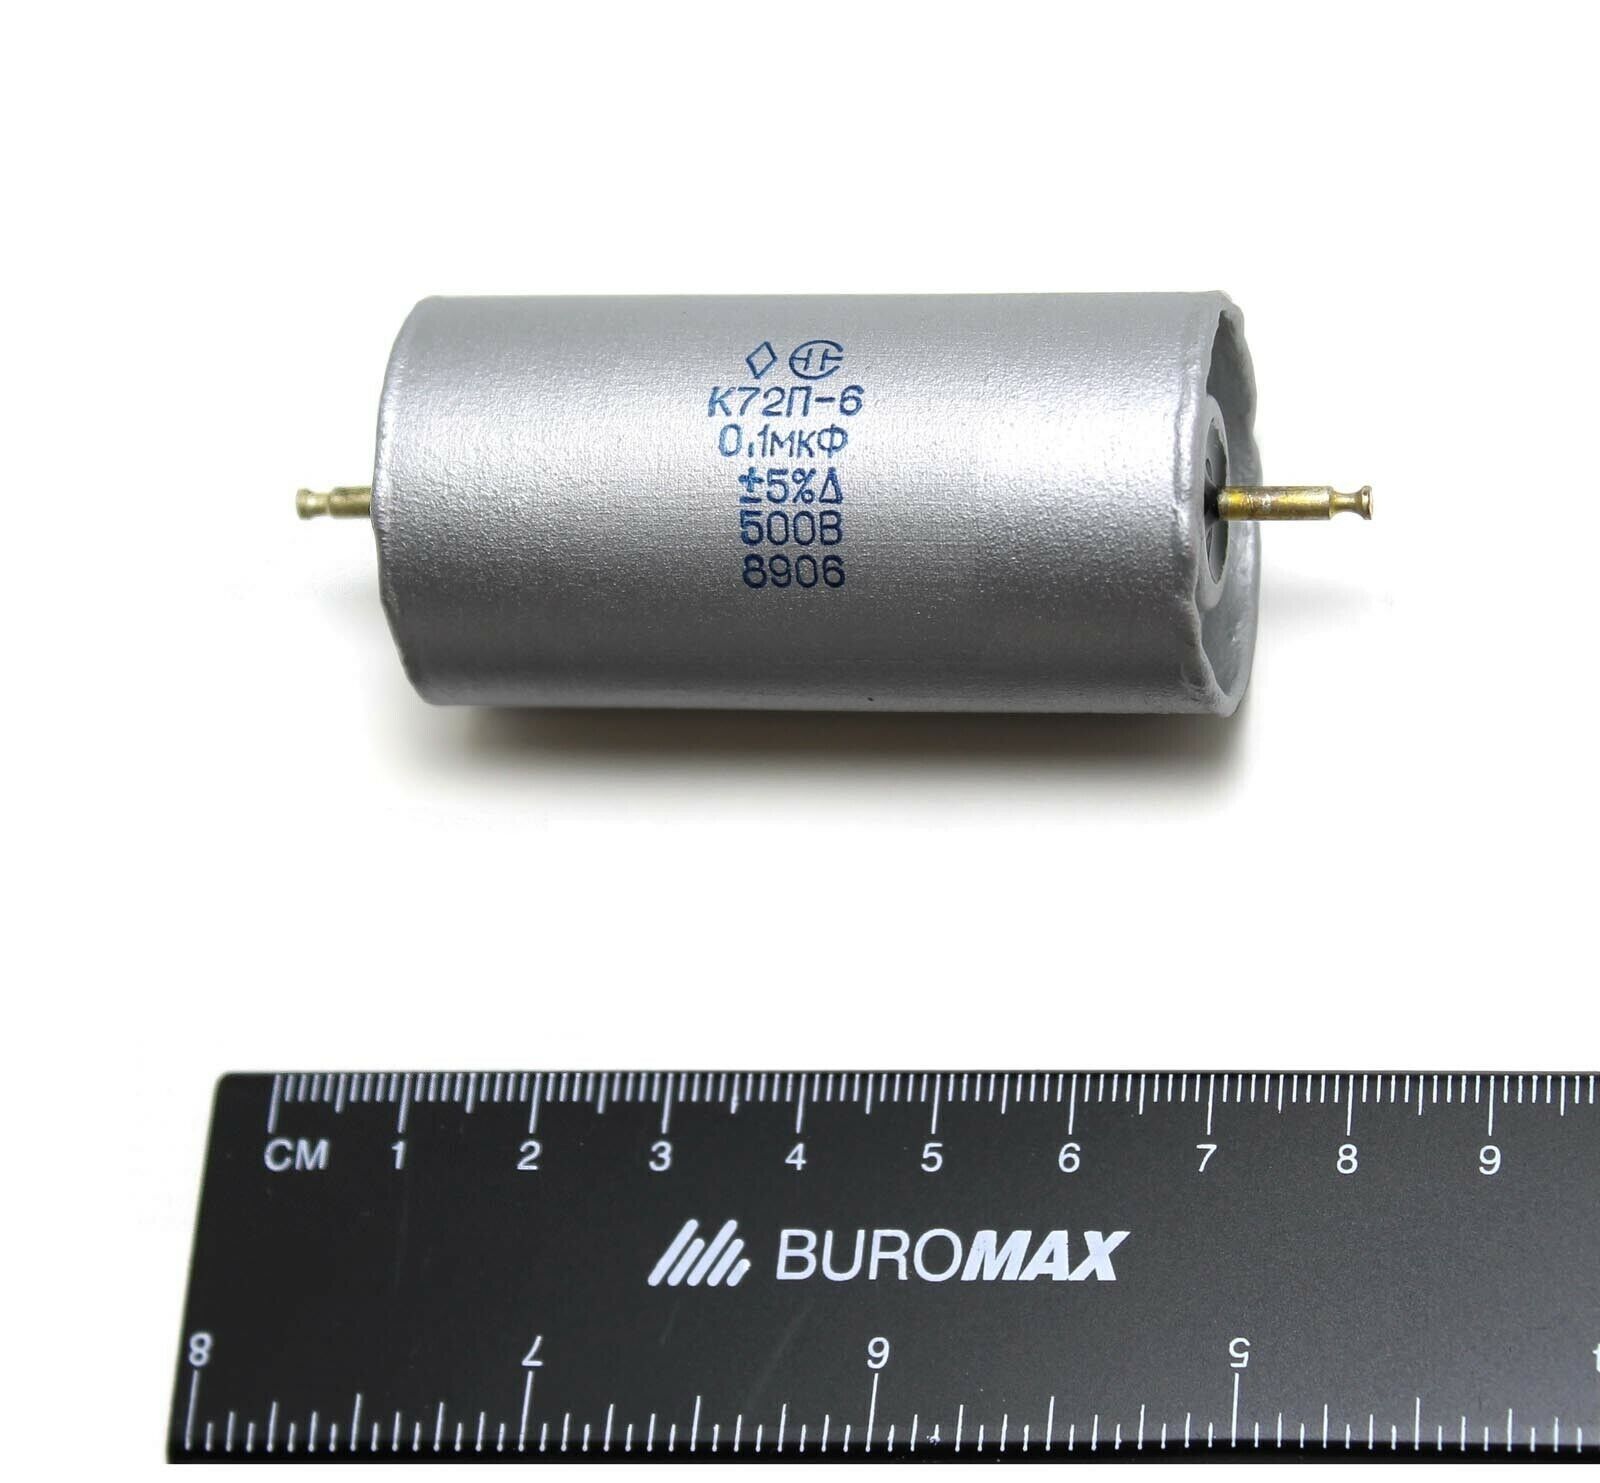 2pcs 0.1uF .1uF 500V 5% K72P-6 Capacitors teflon Audio Hi-End USSR NOS